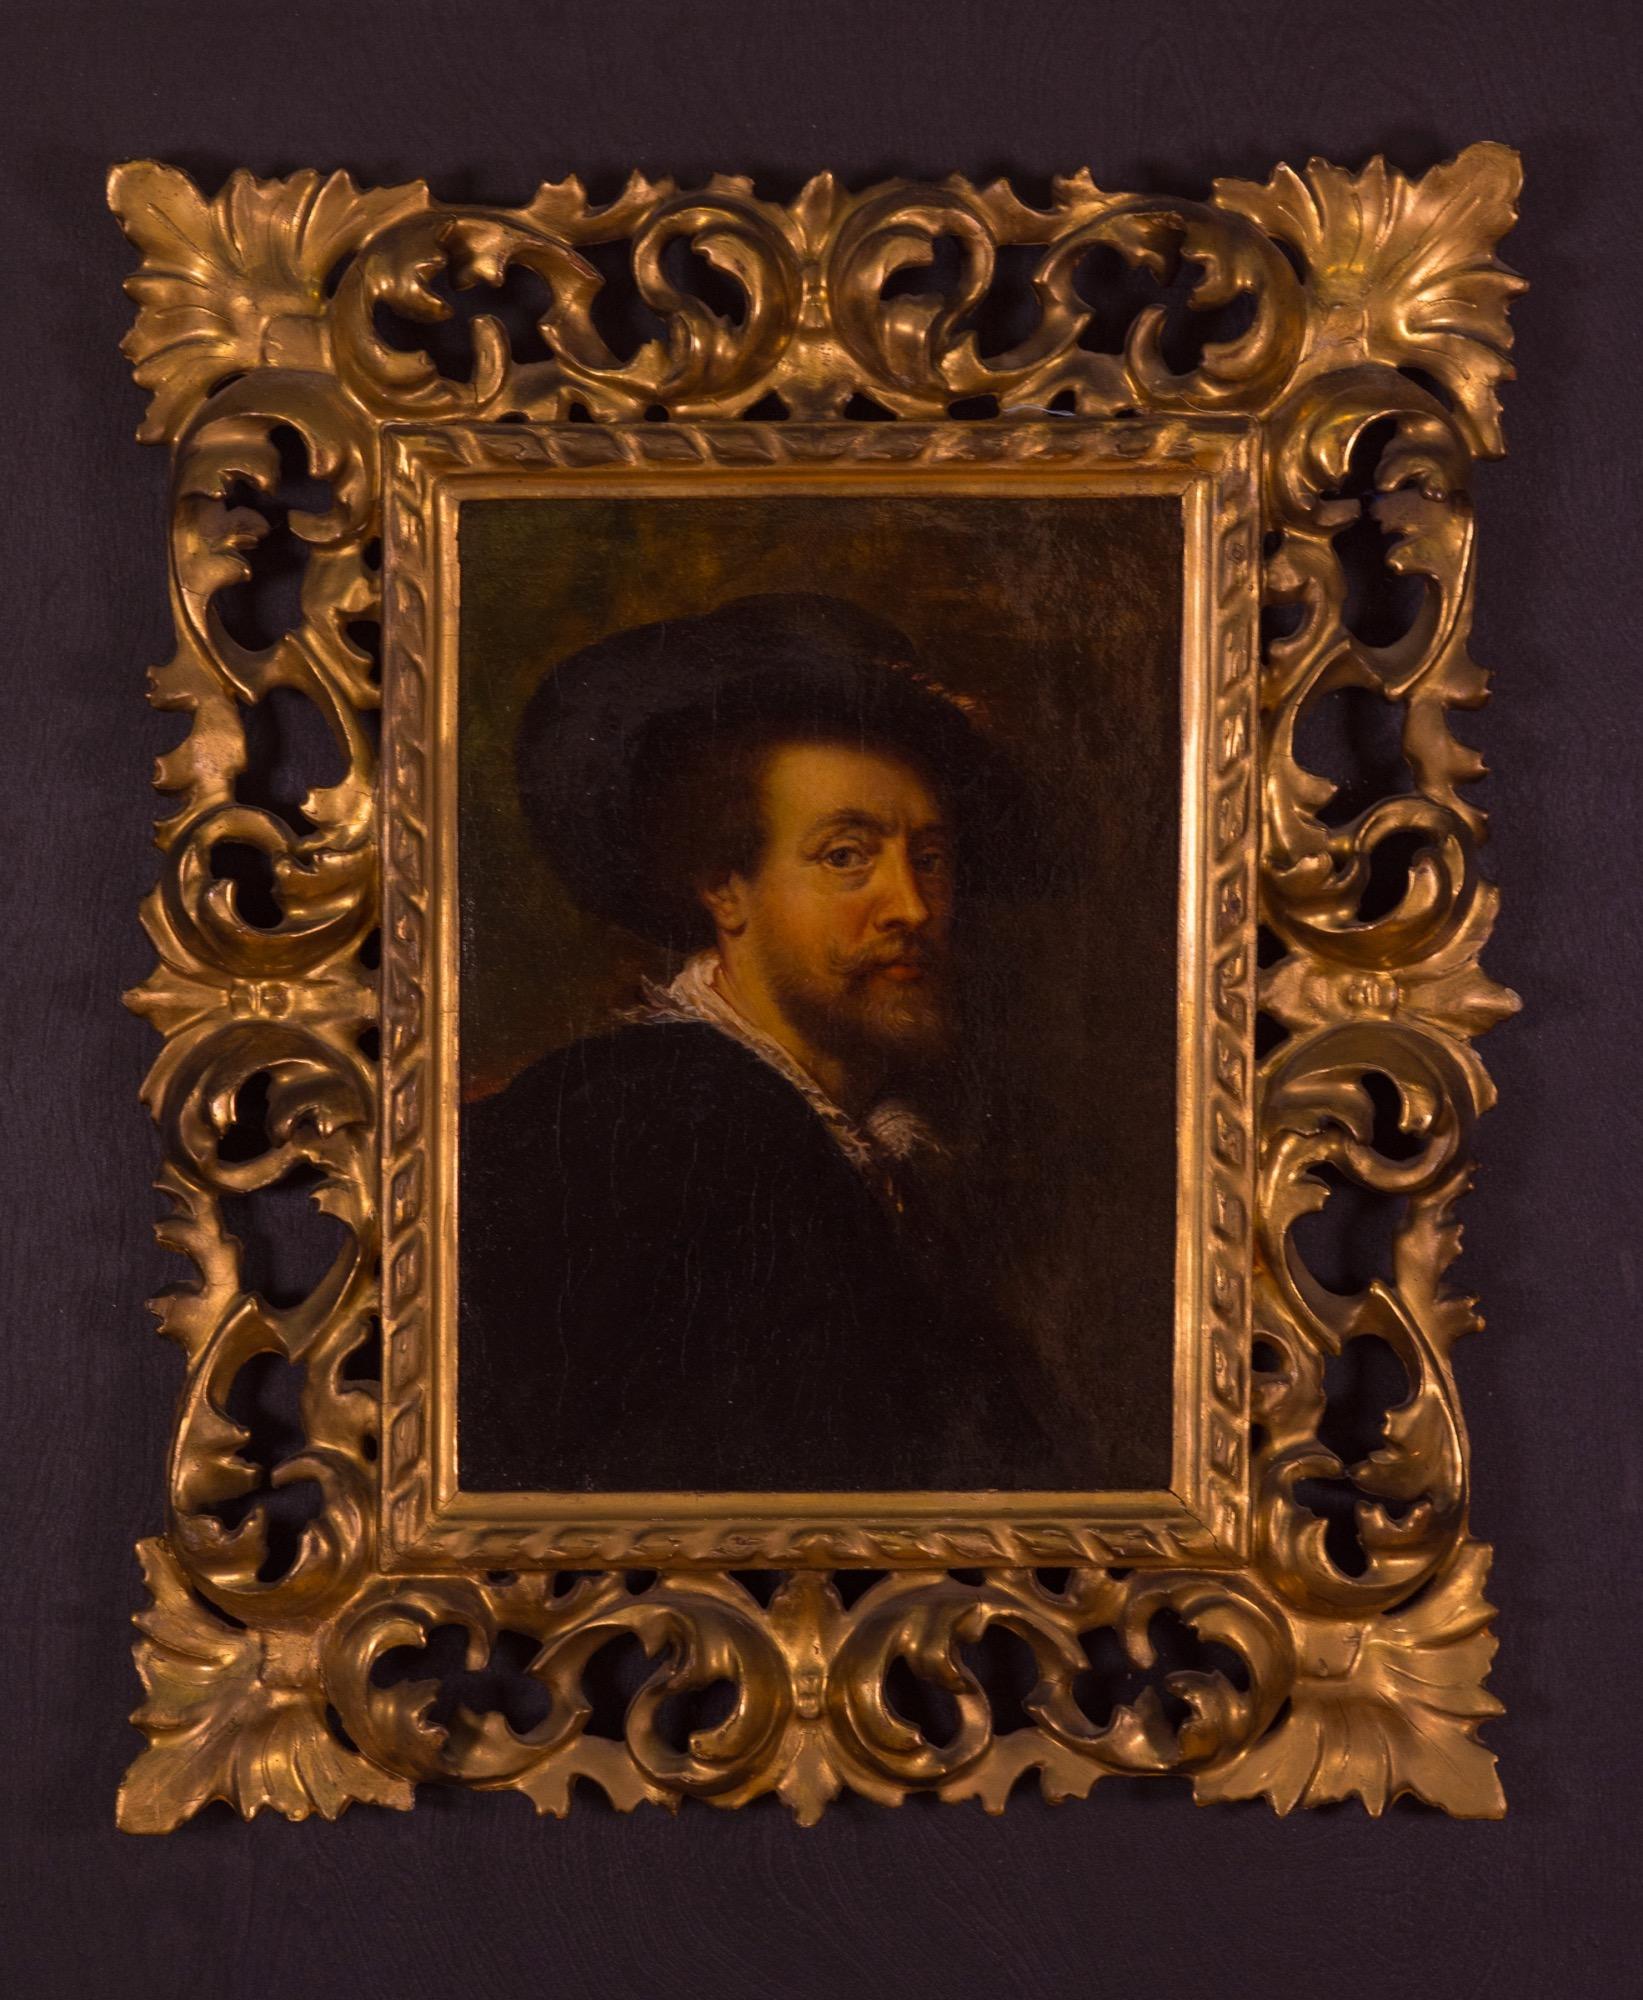 réplique hollandaise du 18ème siècle de l'Autoportrait de Sir Peter Pail Reubens, original peint par Reubens en 1623, huile sur toile. Avec le cadre original sculpté à la main et doré à l'or fin. Il a été monté sur un panneau noir peint à la main et